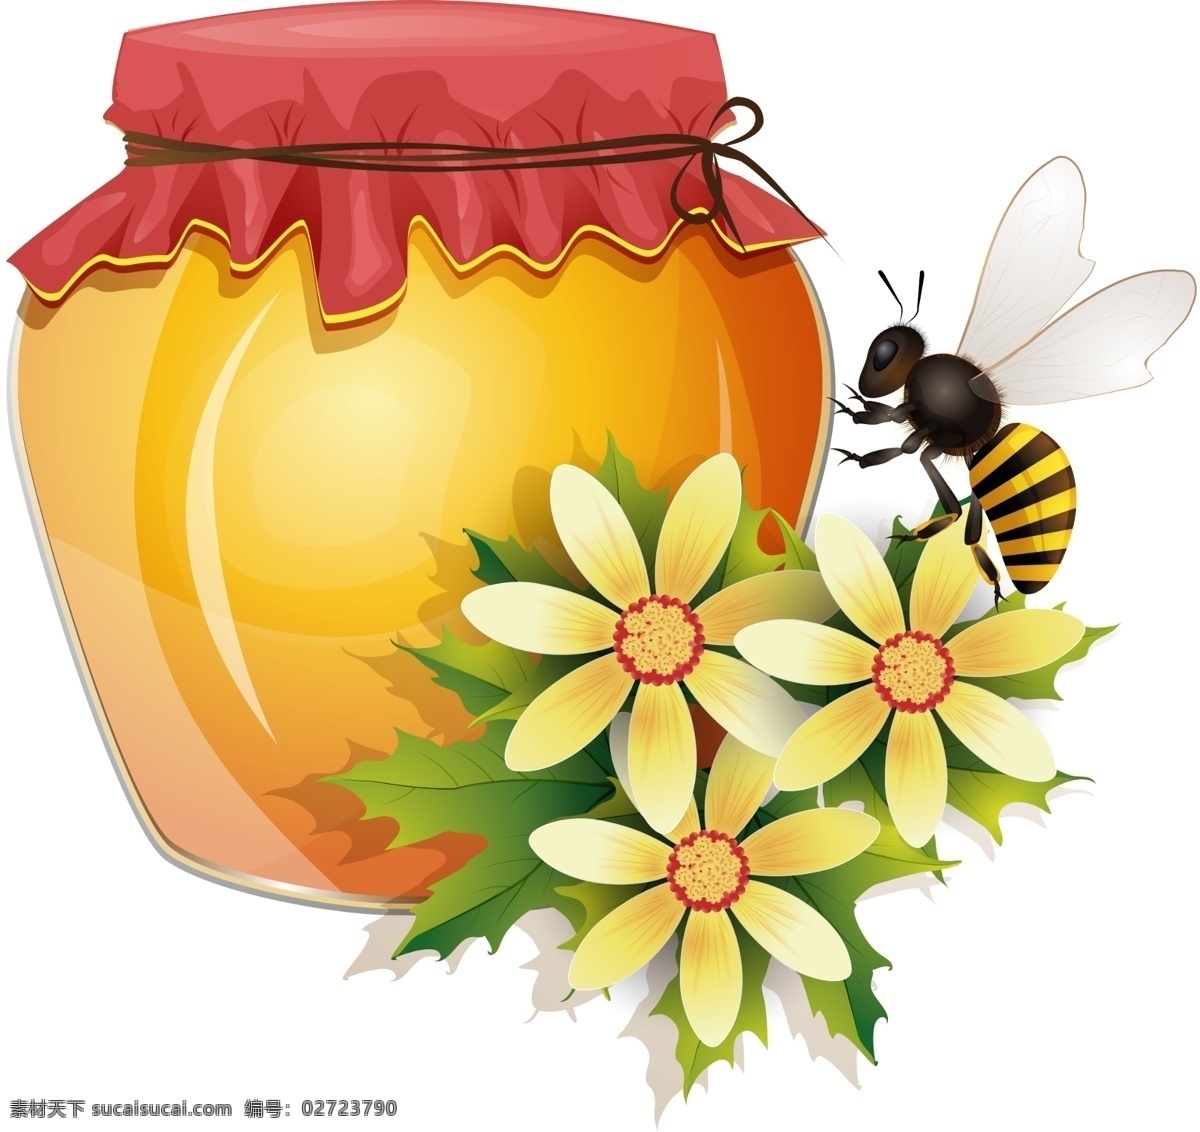 蜂蜜海报 土蜂蜜 蜂蜜广告 养蜂场 蜂蜜包装 蜂蜜展板 蜂蜜养殖 蜂蜜美食 蜂蜜画册 蜂蜜模板 蜂蜜制作 蜂蜜工艺 蜂蜜灯箱 蜂蜜展架 野生蜂蜜 天然蜂蜜 蜂蜜插画 蜂蜜文化 蜂蜜图片 淘宝蜂蜜 养生食品 蜂蜜产品 蜂蜜礼品盒 蜂蜜制作工艺 蜂蜜素材 蜜蜂 蜂蜜王浆 免扣蜂蜜